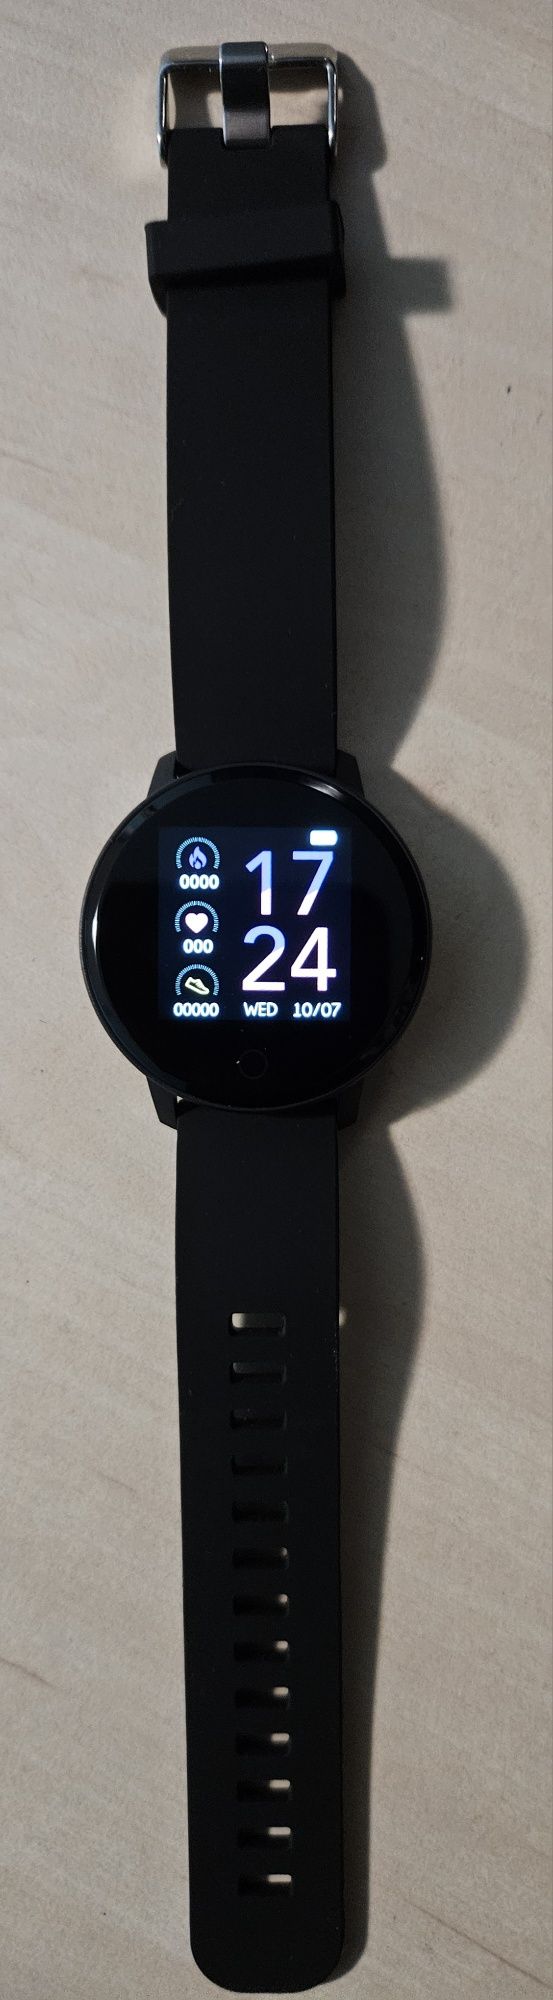 Smartwatch Avon (ceas inteligent)